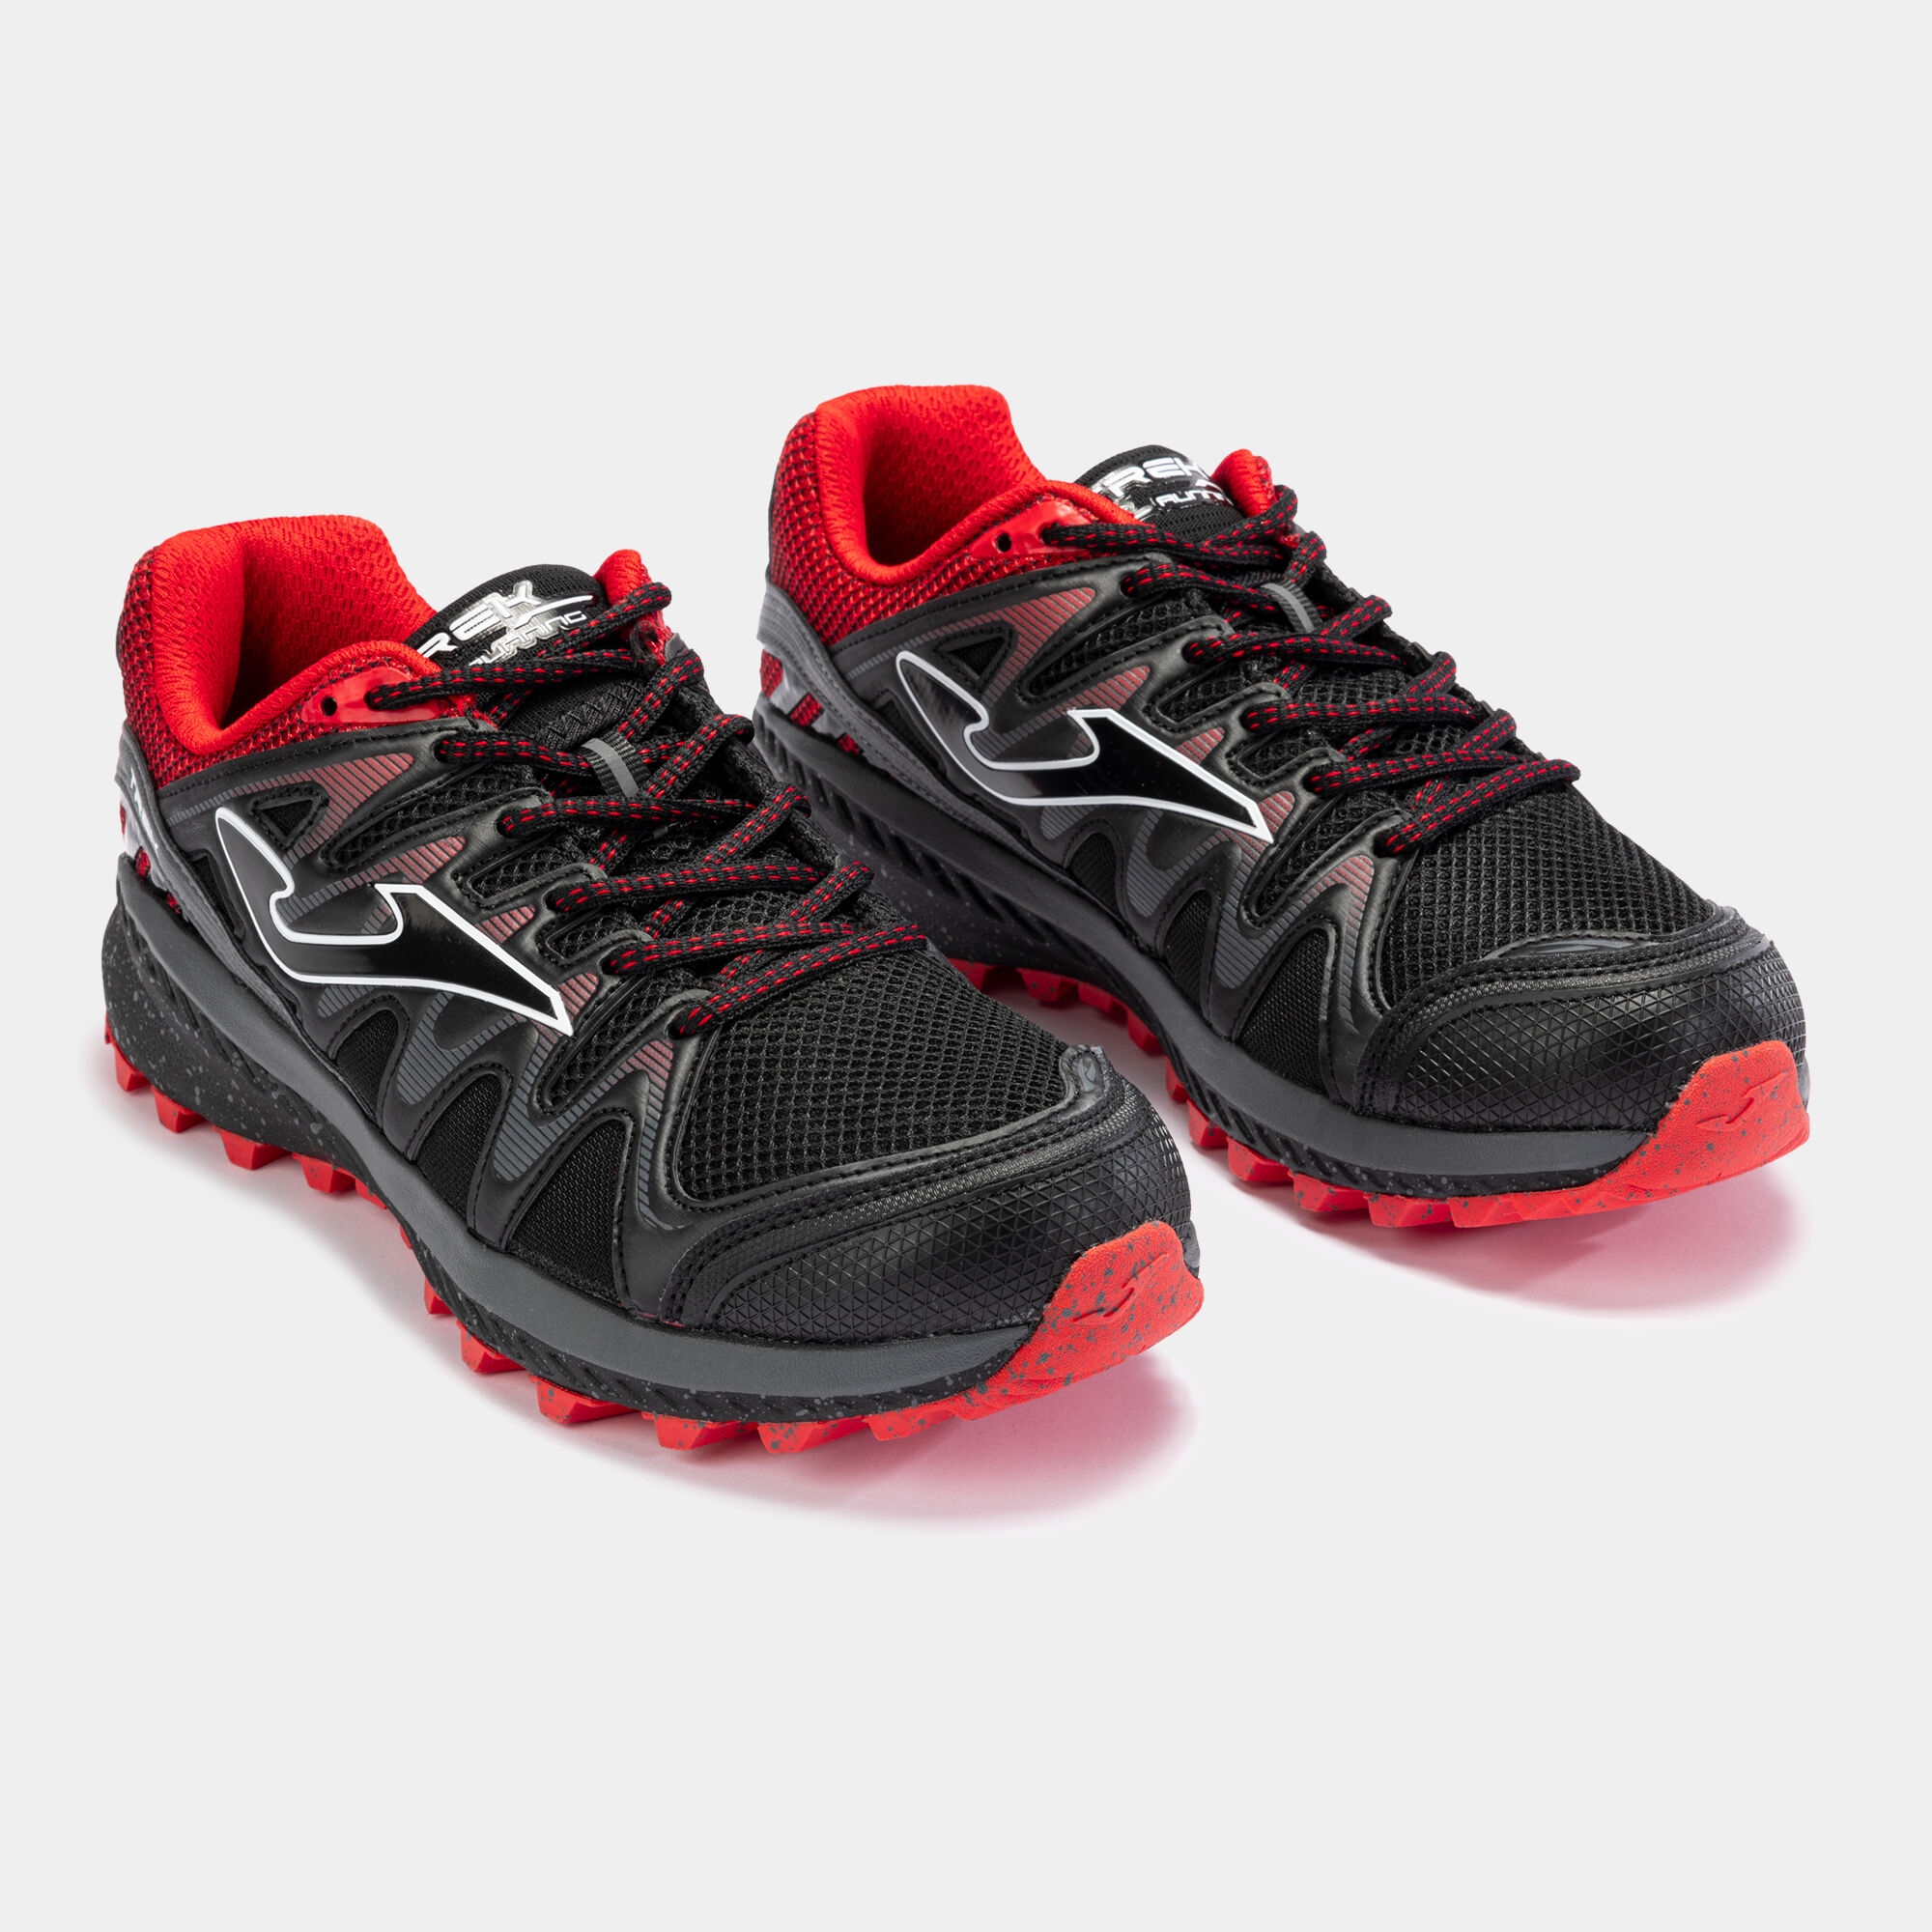 Pantofi sport trail Tk.Trek 23 bărbaȚi negru roșu